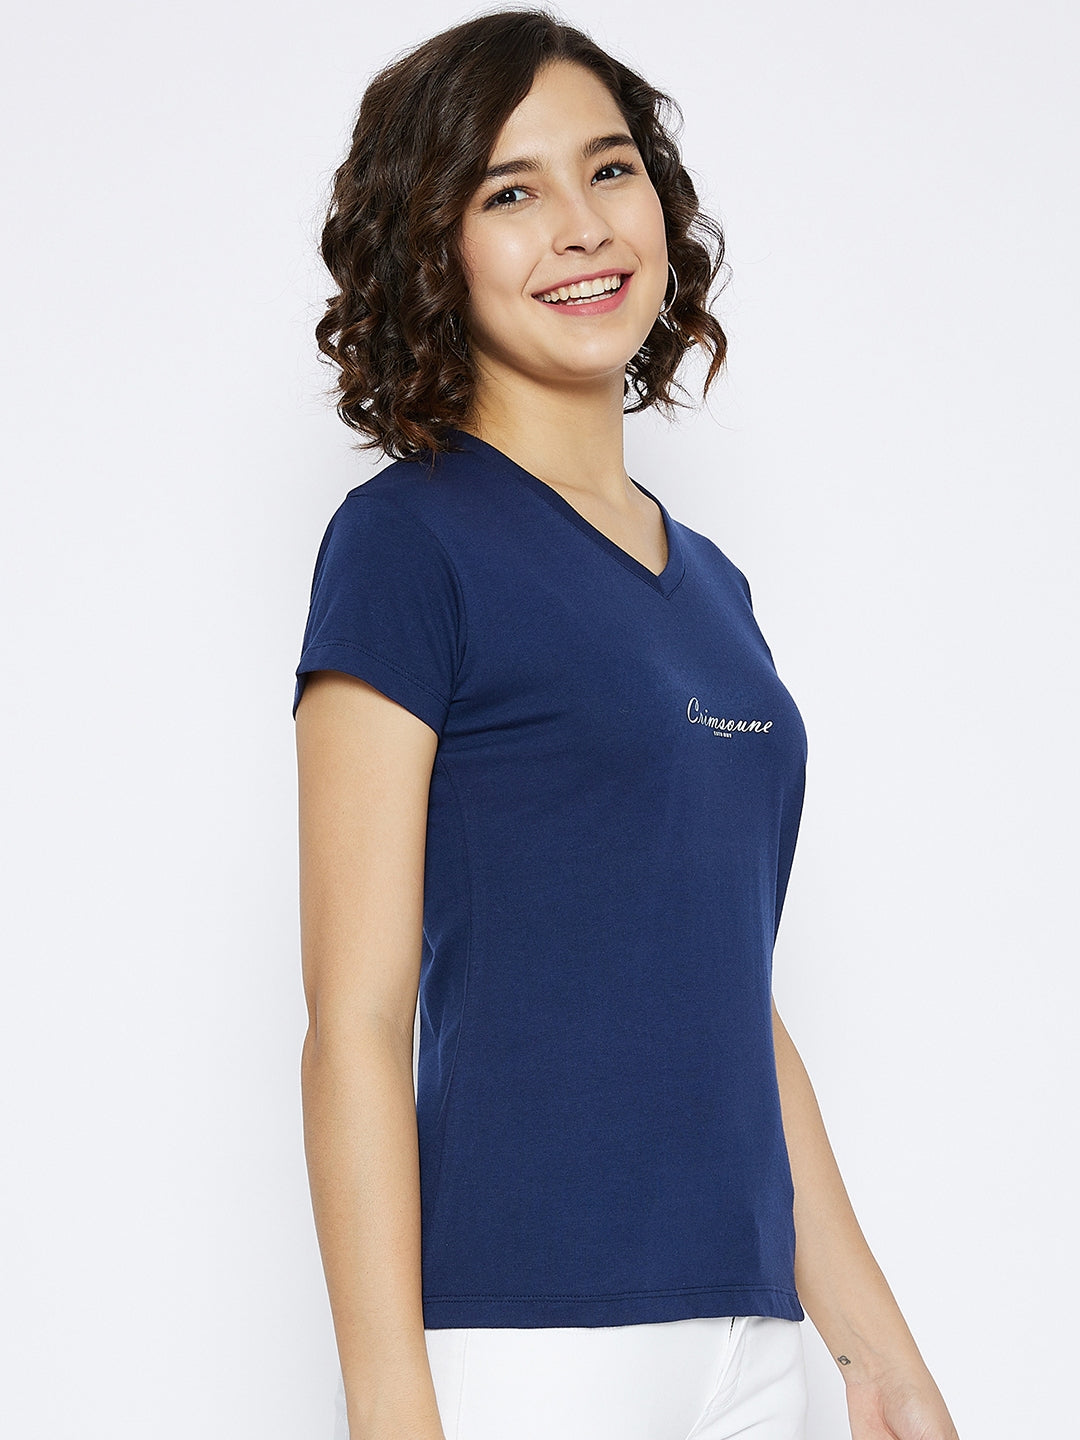 Navy Blue Printed V-Neck T-shirt - Women T-Shirts